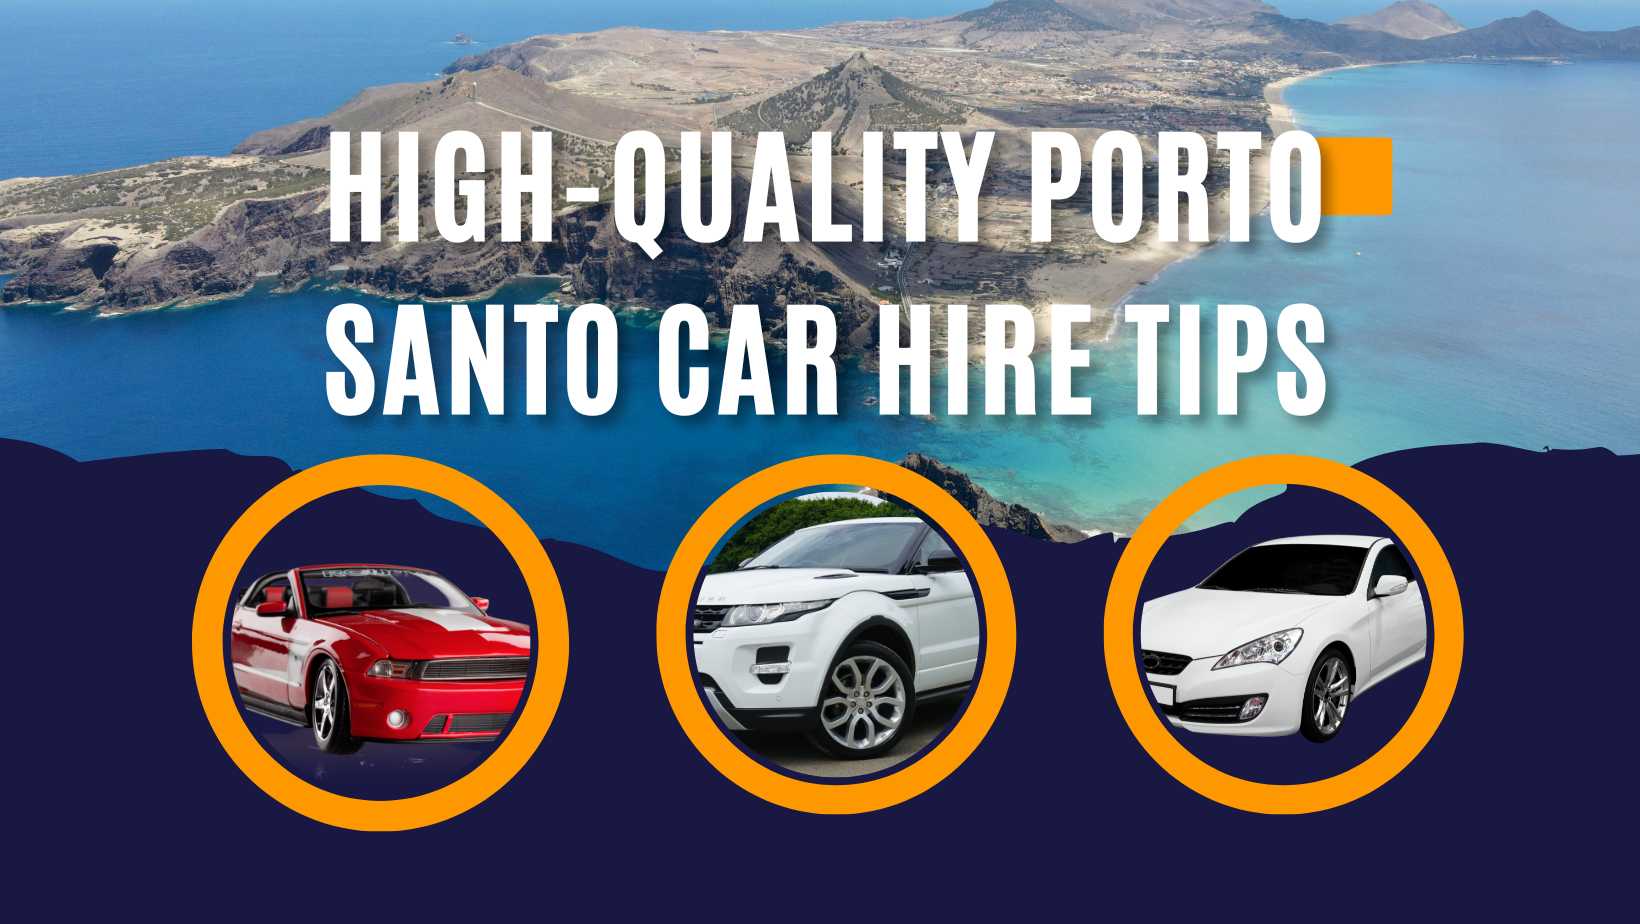 Porto Santo car hire tips